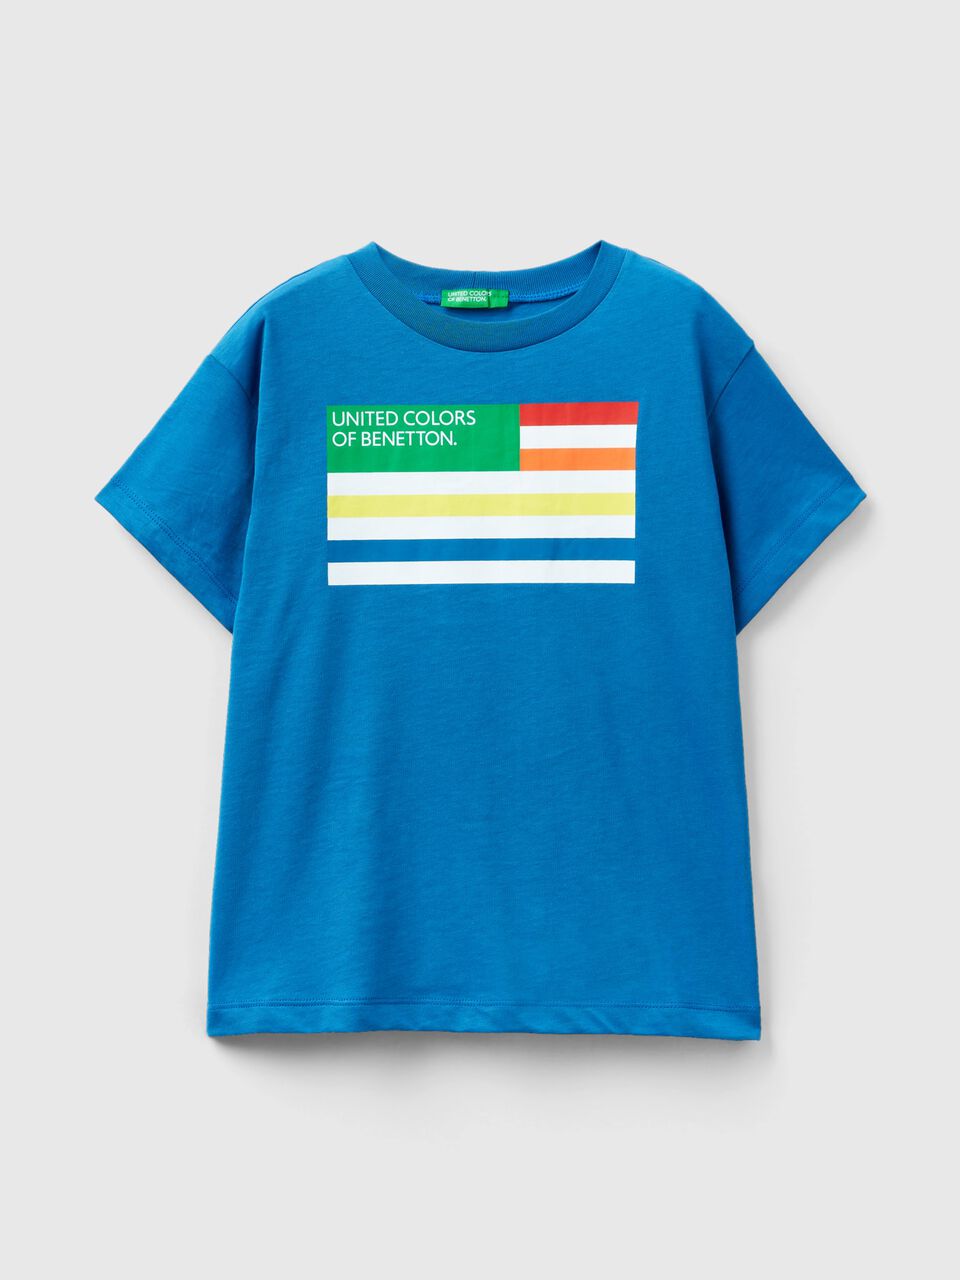 T-Shirt aus 100% Bio-Baumwolle - Benetton Blau 